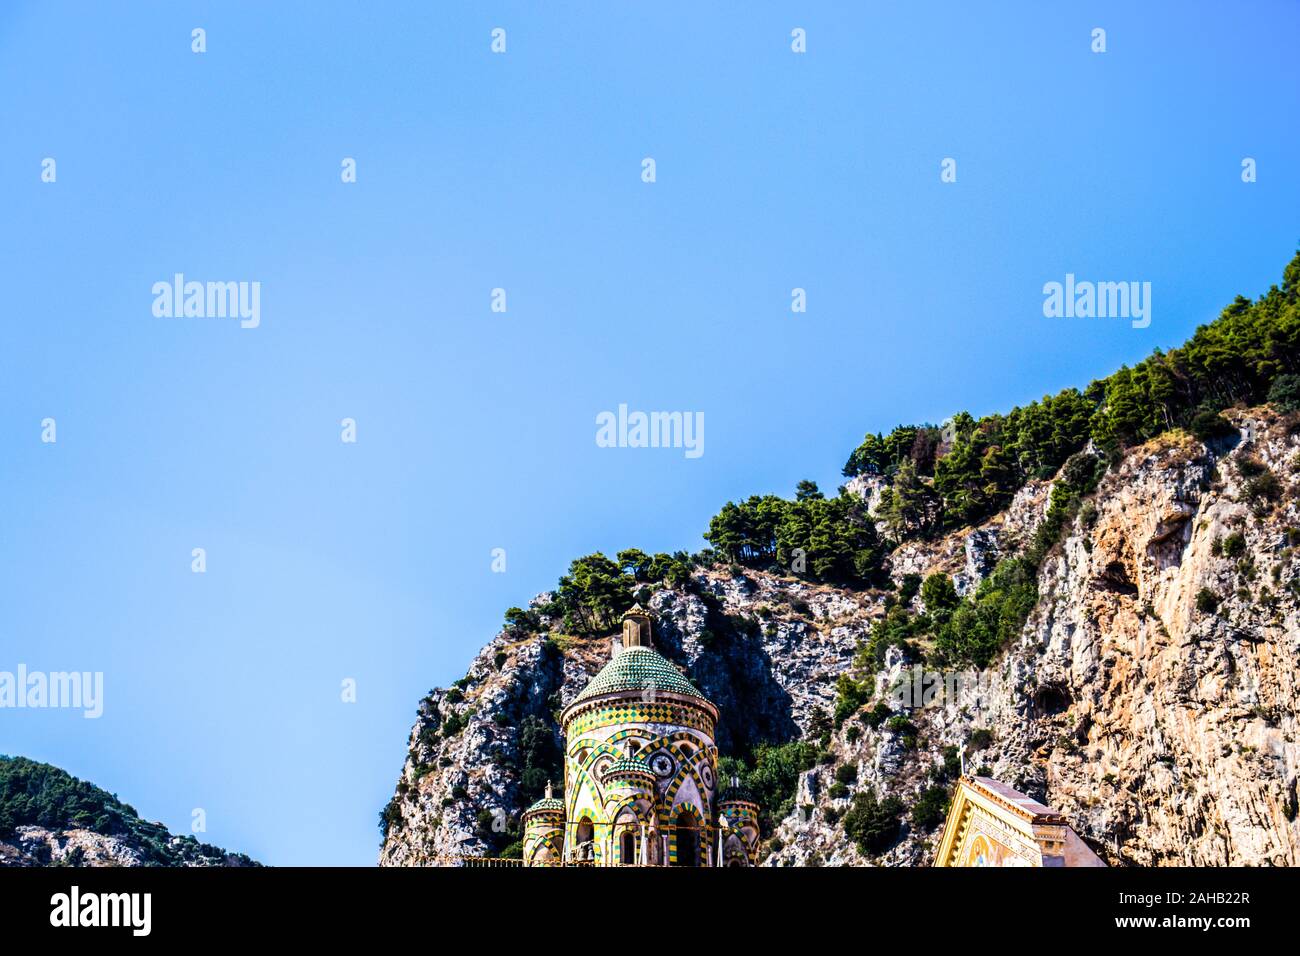 Amalfi City minimalistischer Blick auf die Kirche grünen Kuppel Dach mit Fliesen Muster und Felsen Klippen Berge. Amalfitana. Stockfoto